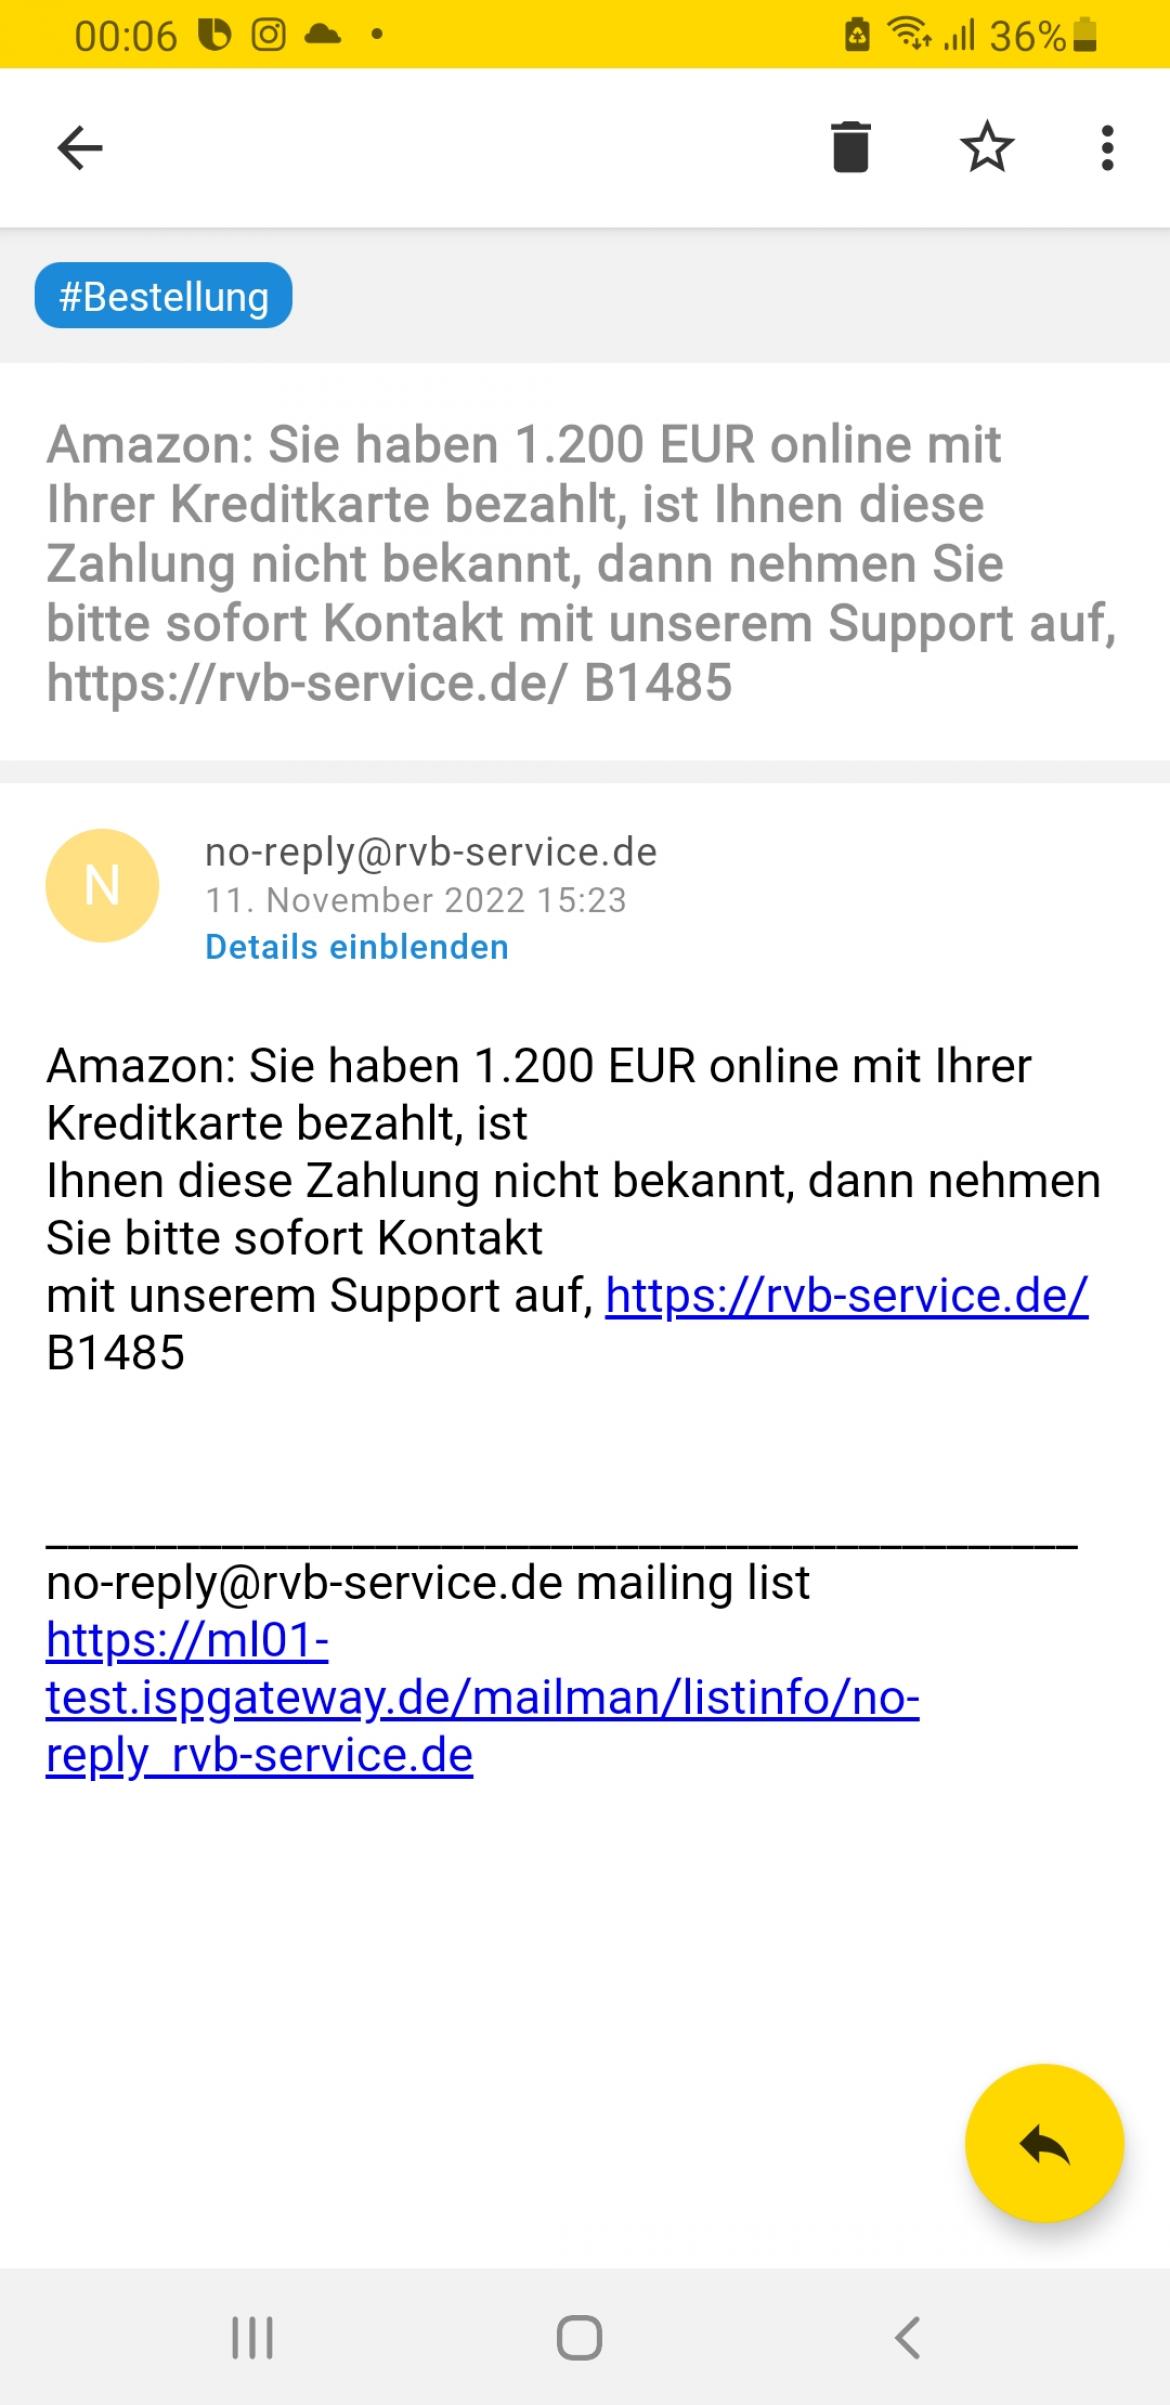 Screenshot Amazon Phishing Mail 2 2023